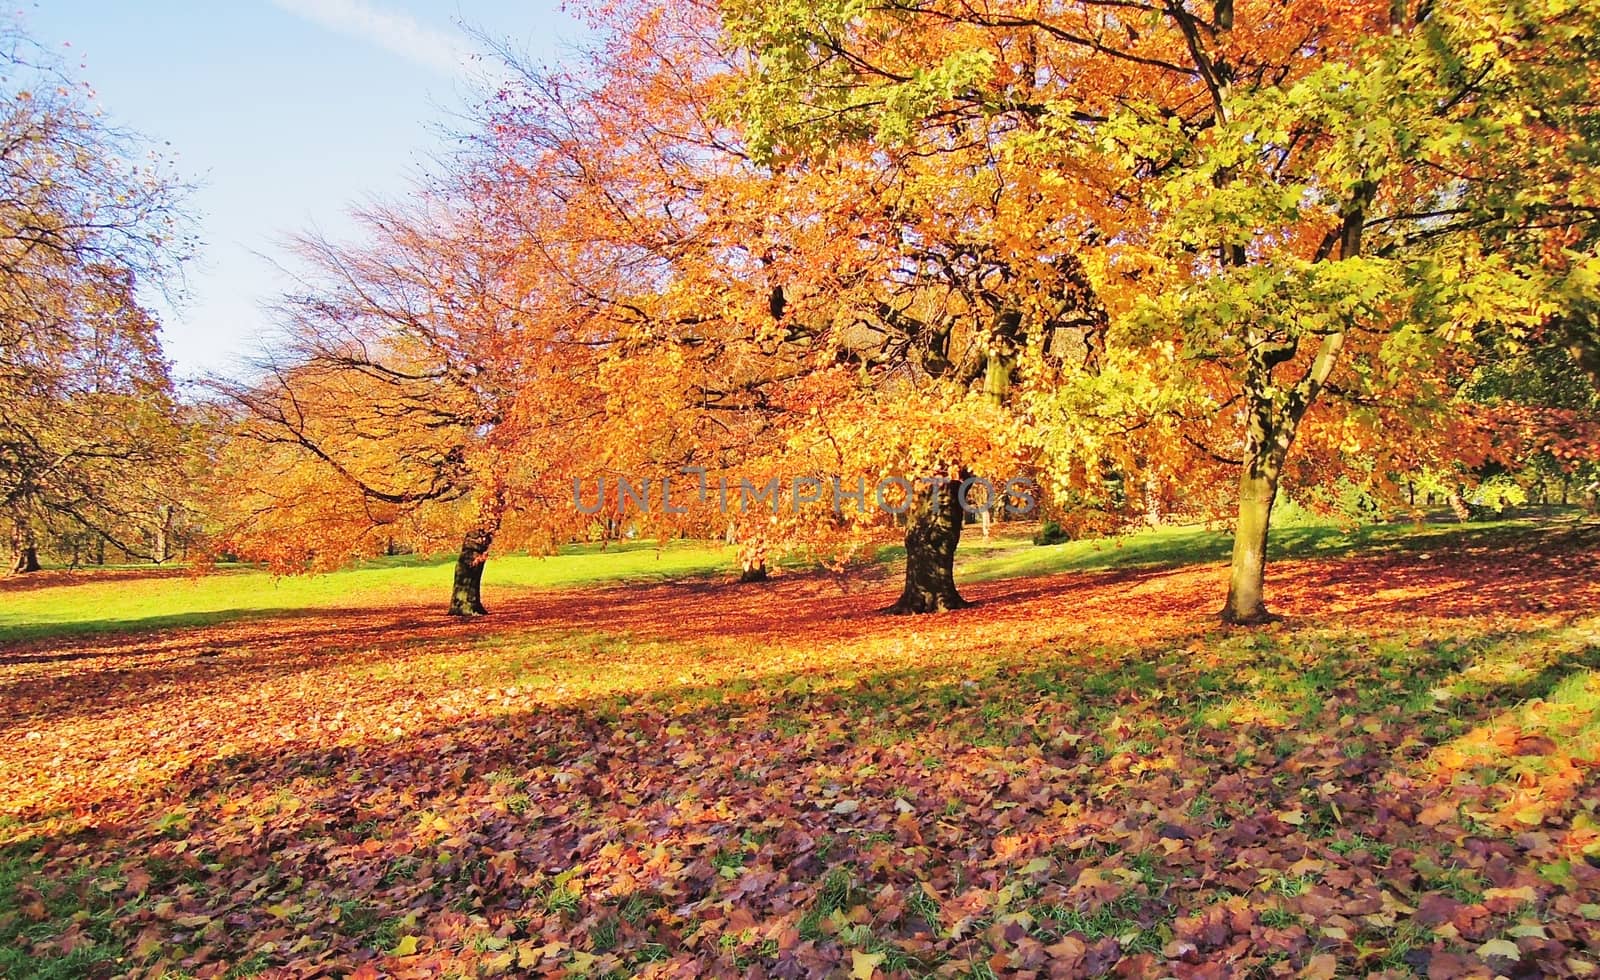 A colourful Autumn landscape.